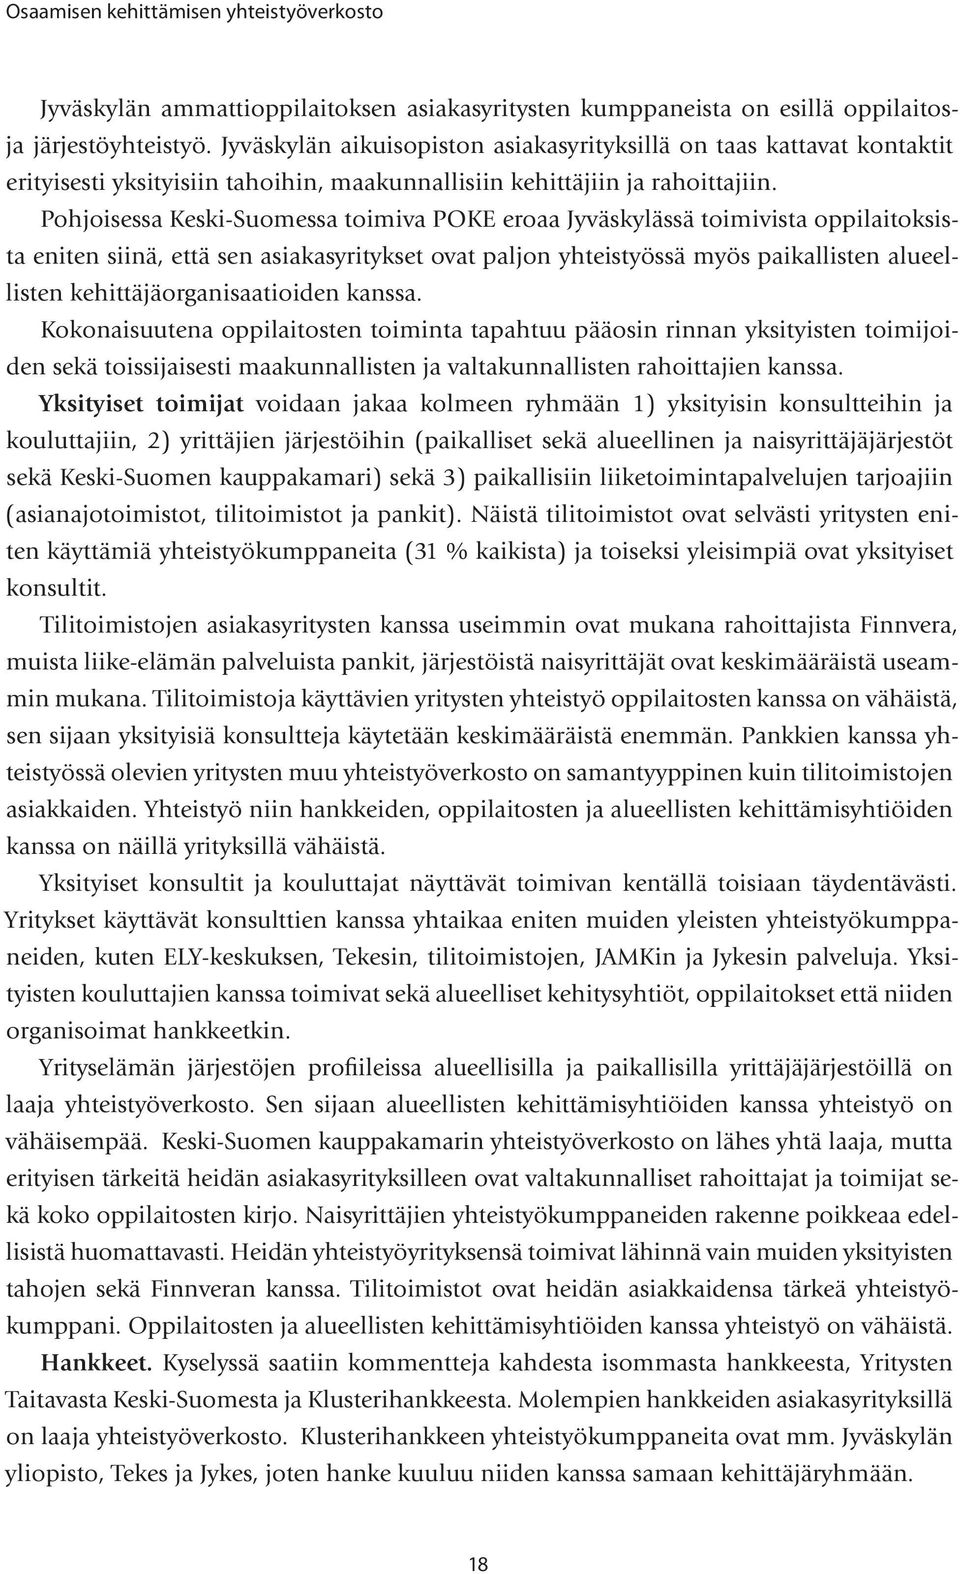 Pohjoisessa Keski-Suomessa toimiva POKE eroaa Jyväskylässä toimivista oppilaitoksista eniten siinä, että sen asiakasyritykset ovat paljon yhteistyössä myös paikallisten alueellisten